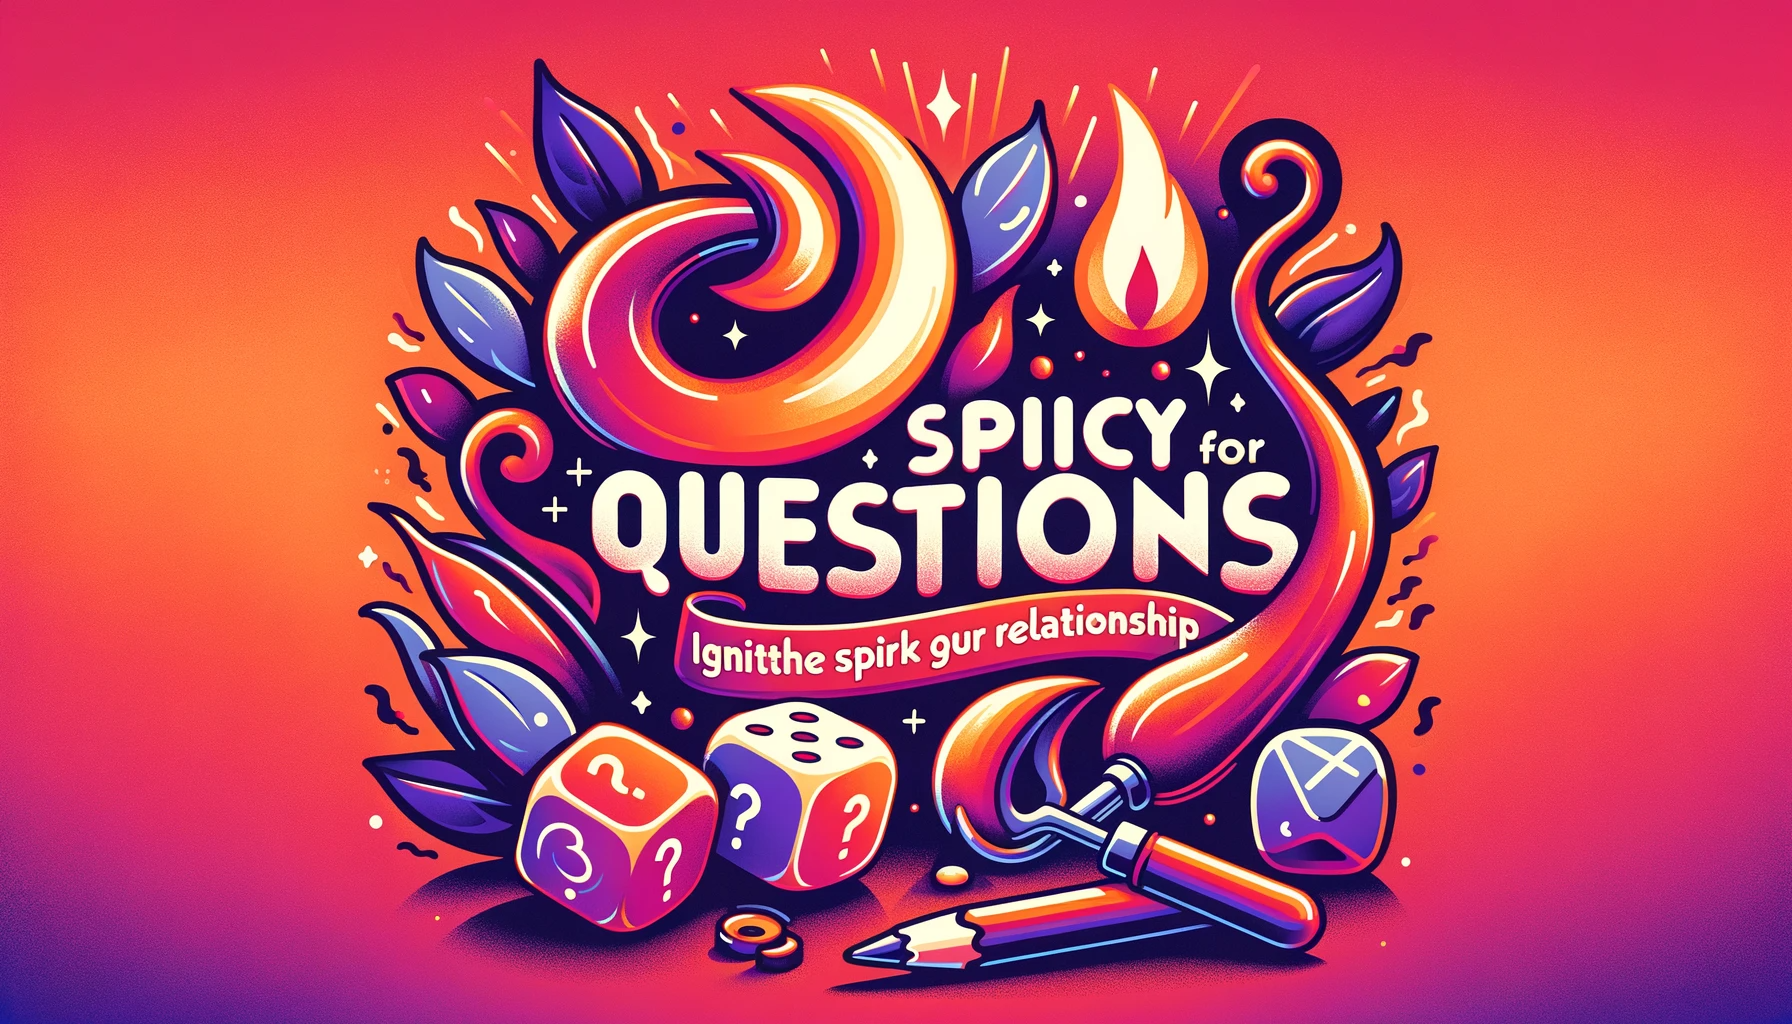 Miniaturka artykułu "Pikantne Pytania dla Par", przedstawiająca płomień, parę kości, znak zapytania, w kolorach czerwieni, pomarańczy i głębokiego fioletu